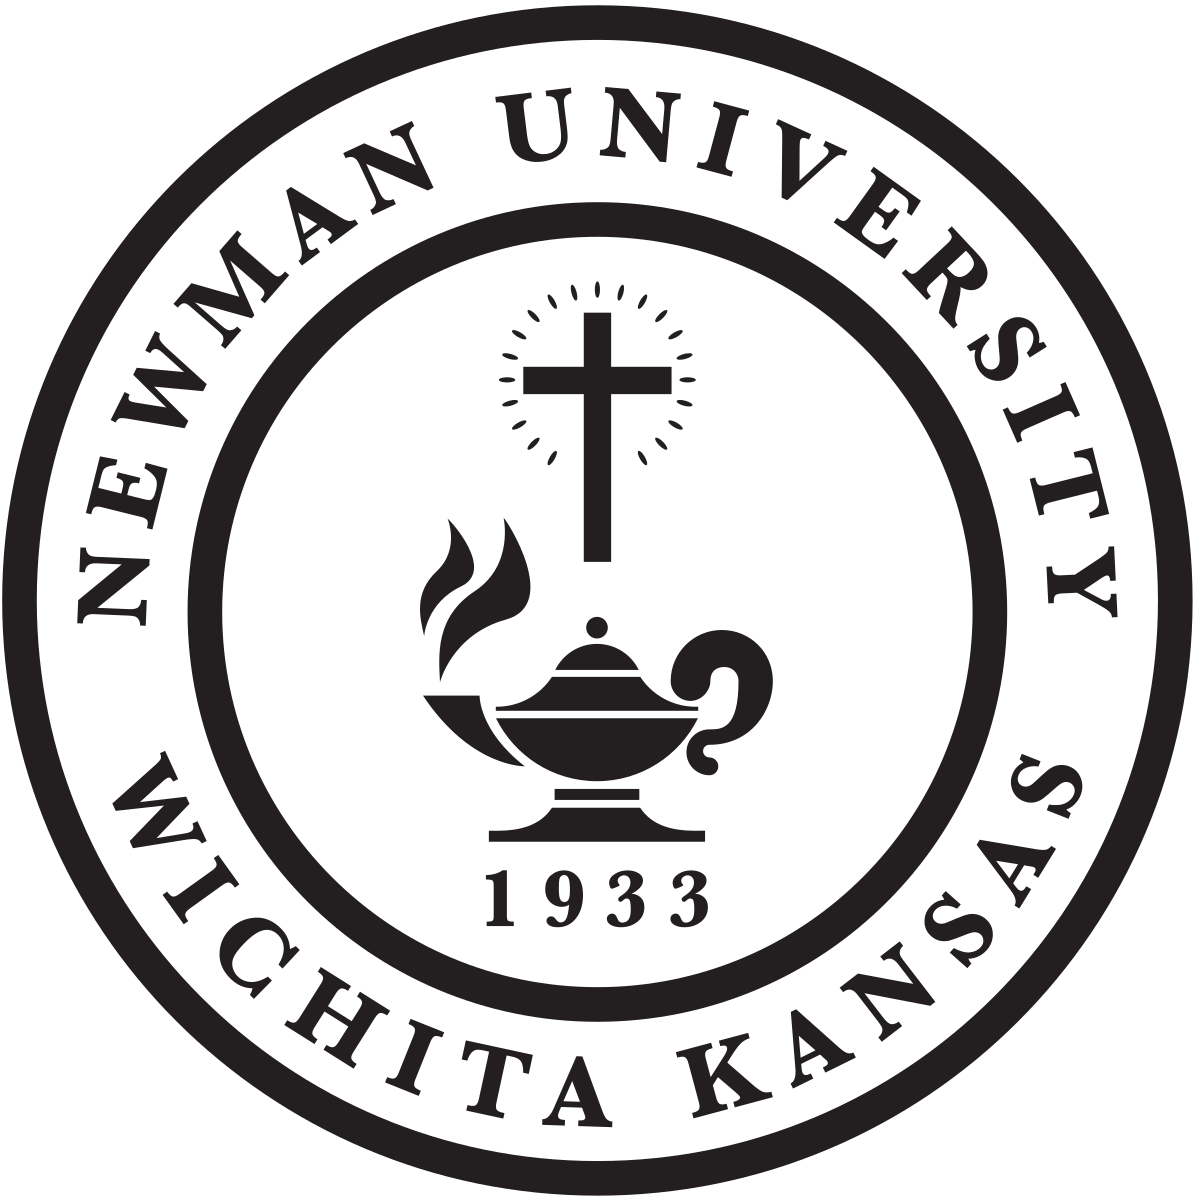 Newman Logo - Newman University, Wichita